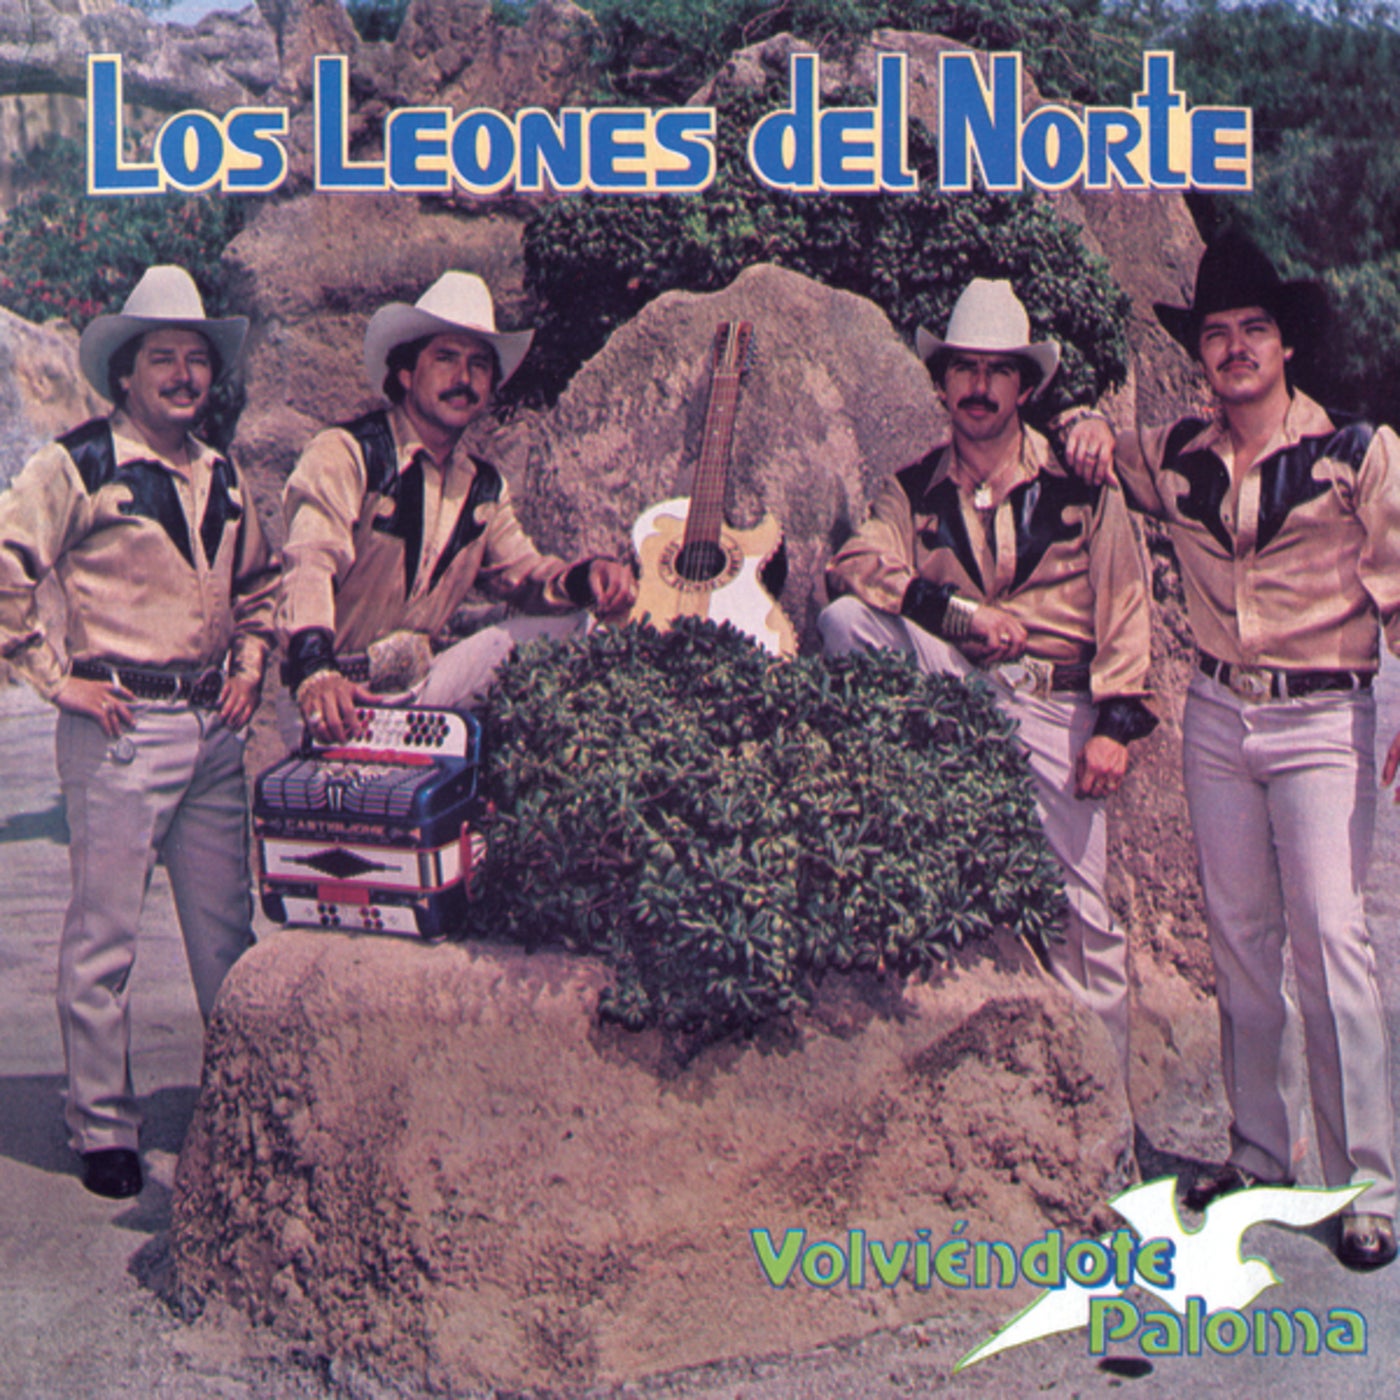 Volviéndote Paloma by Los Leones Del Norte on Beatsource